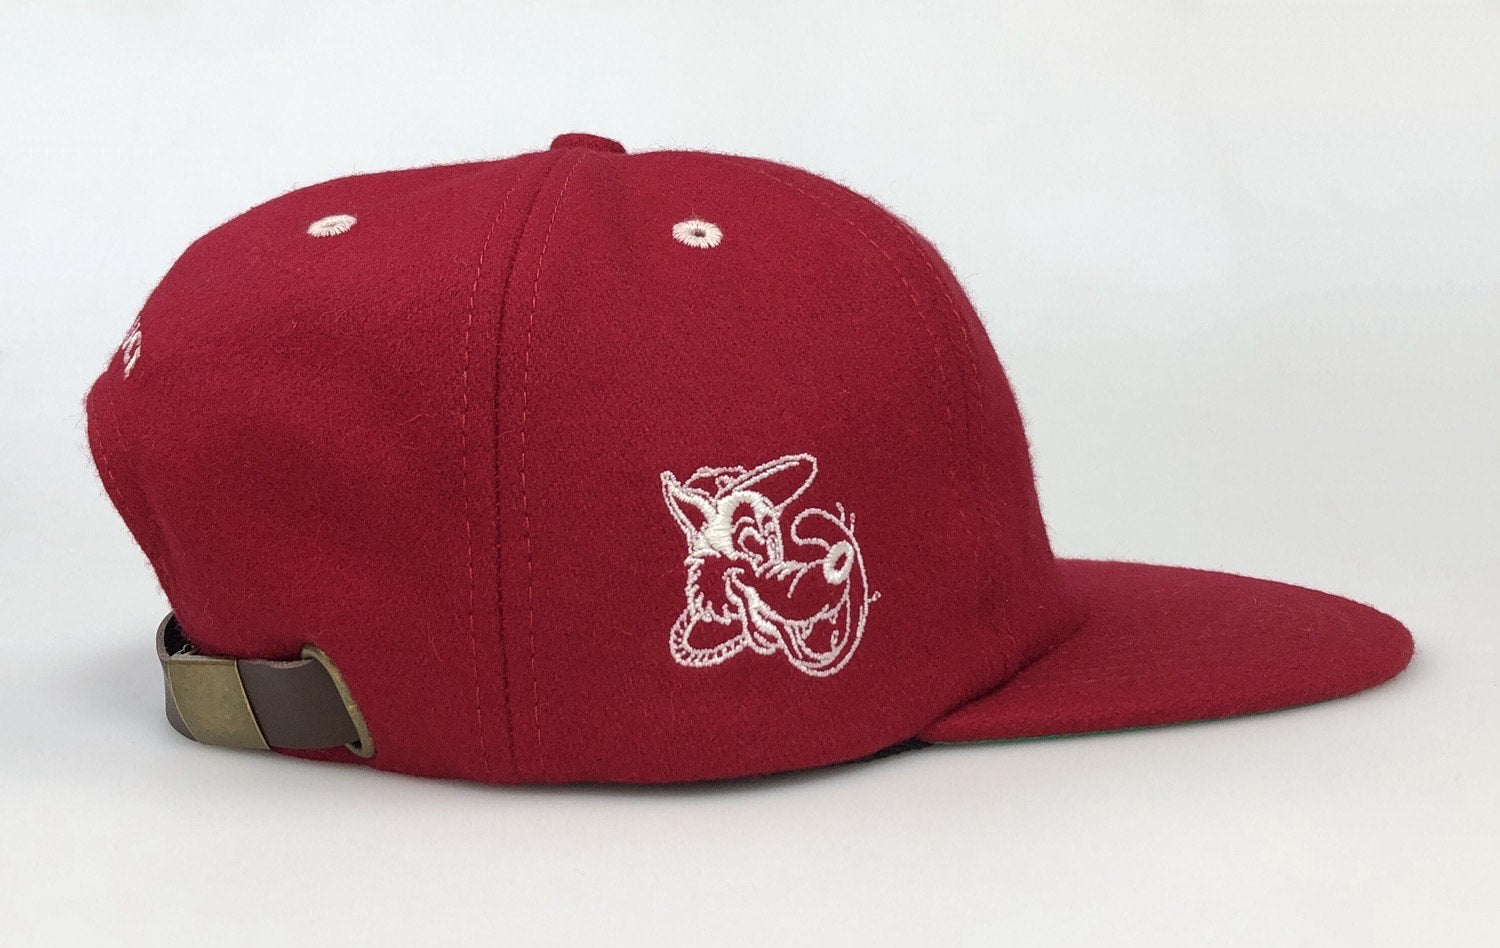 PANTONE KOLD RED - ALL CAPS Melton Wool Hat